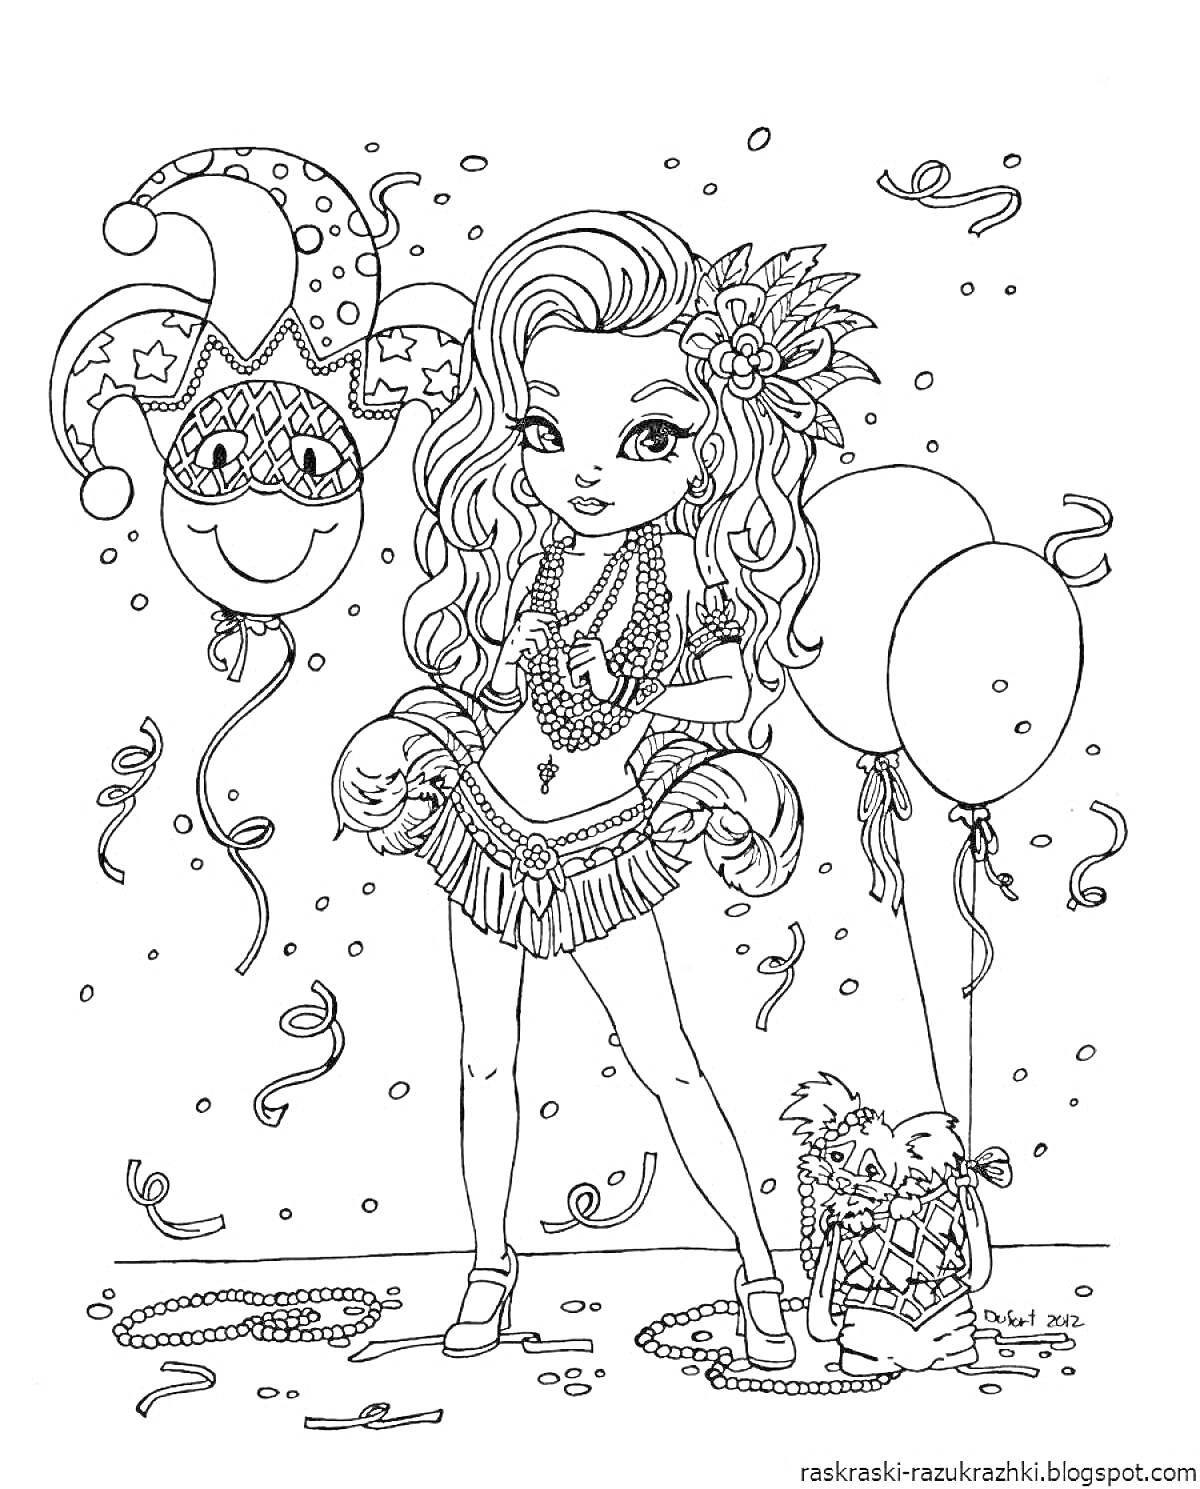 Раскраска Девочка на карнавале с веселой маской и шарами, одетая в карнавальный костюм с украшениями и цветами в волосах